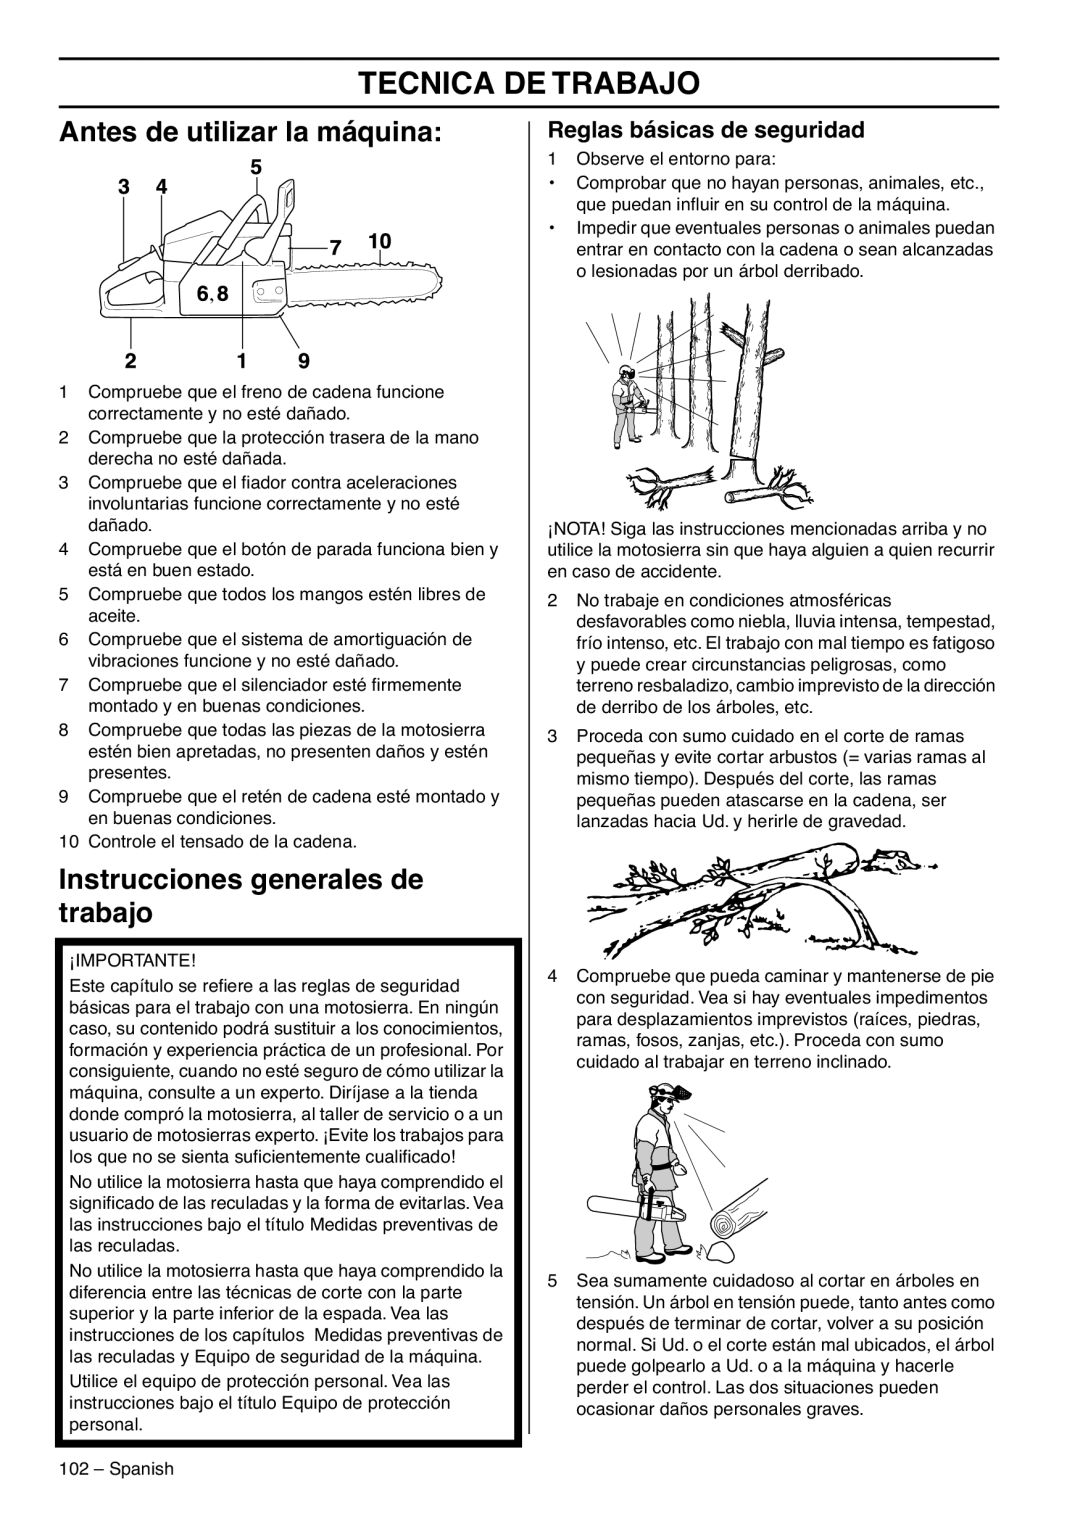 RedMax G5300 manual Tecnica De Trabajo, Antes de utilizar la máquina, Instrucciones generales de trabajo 